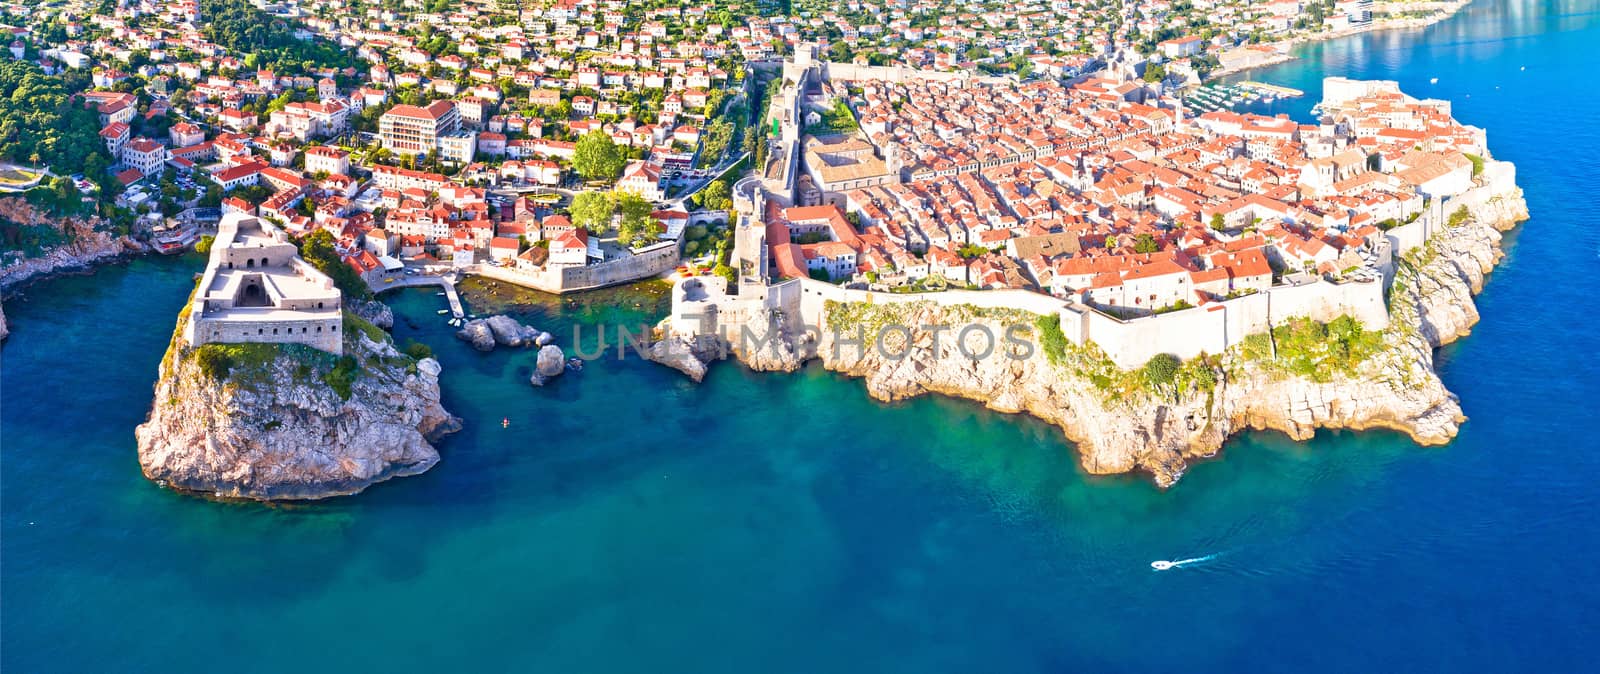 Historic city of Dubrovnik aerial panoramic view, southern Dalmatia region of Croatia